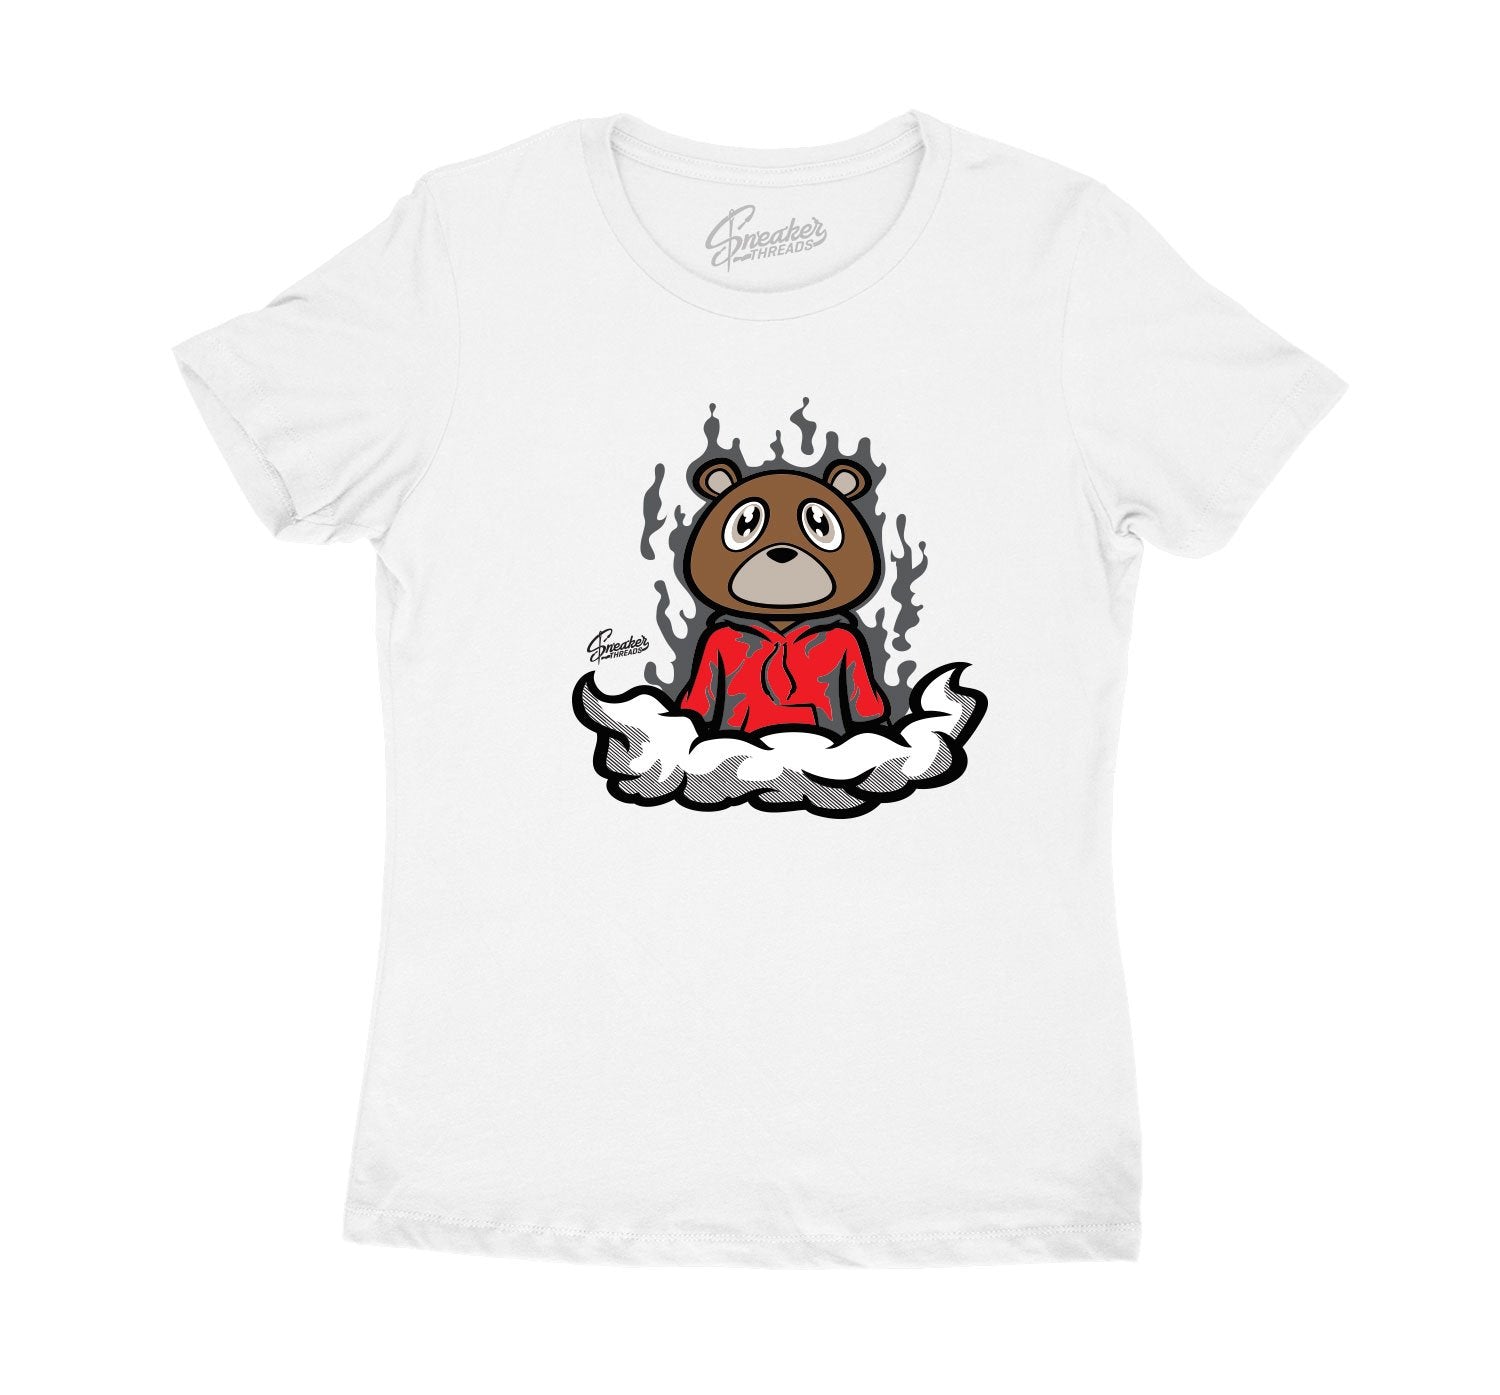 Jordan 11 Bred Freshest Bear shirt for women to match 